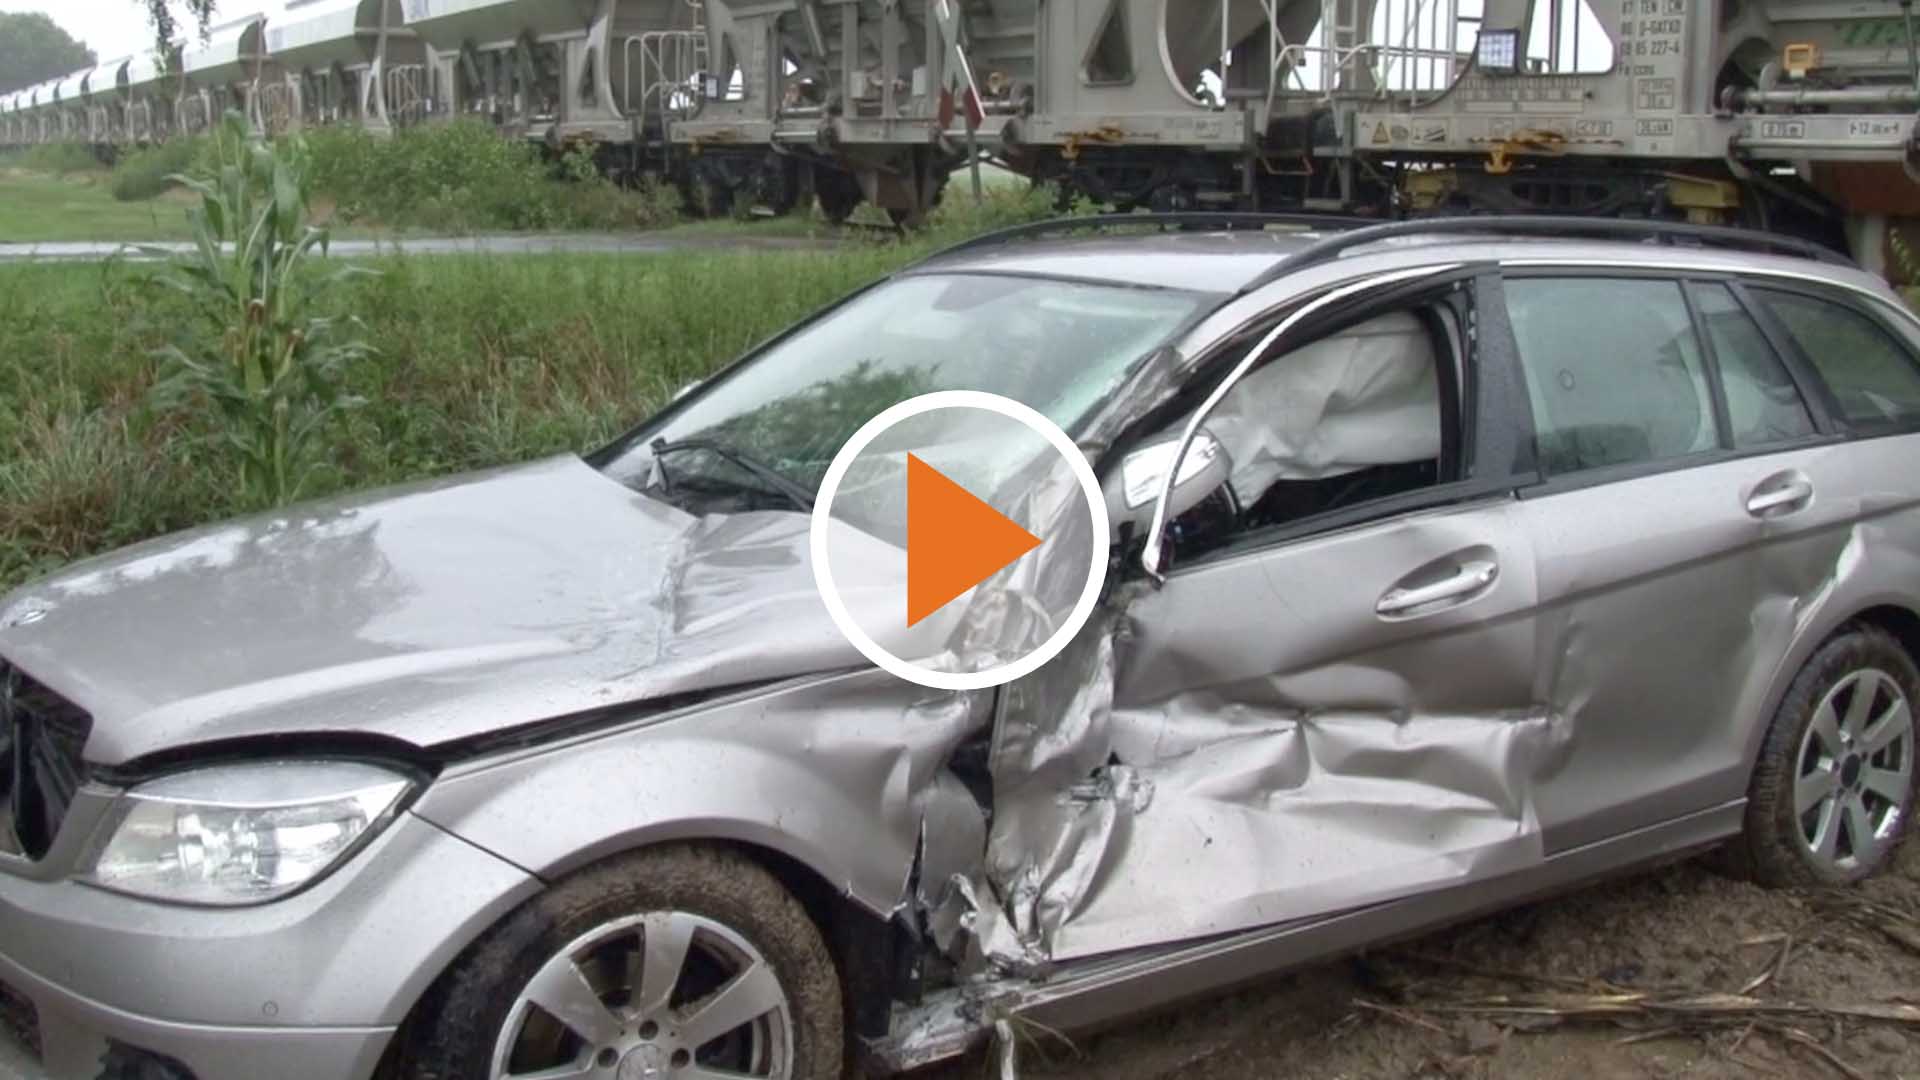 Screen_Verkehrsunfall mit Gueterzug